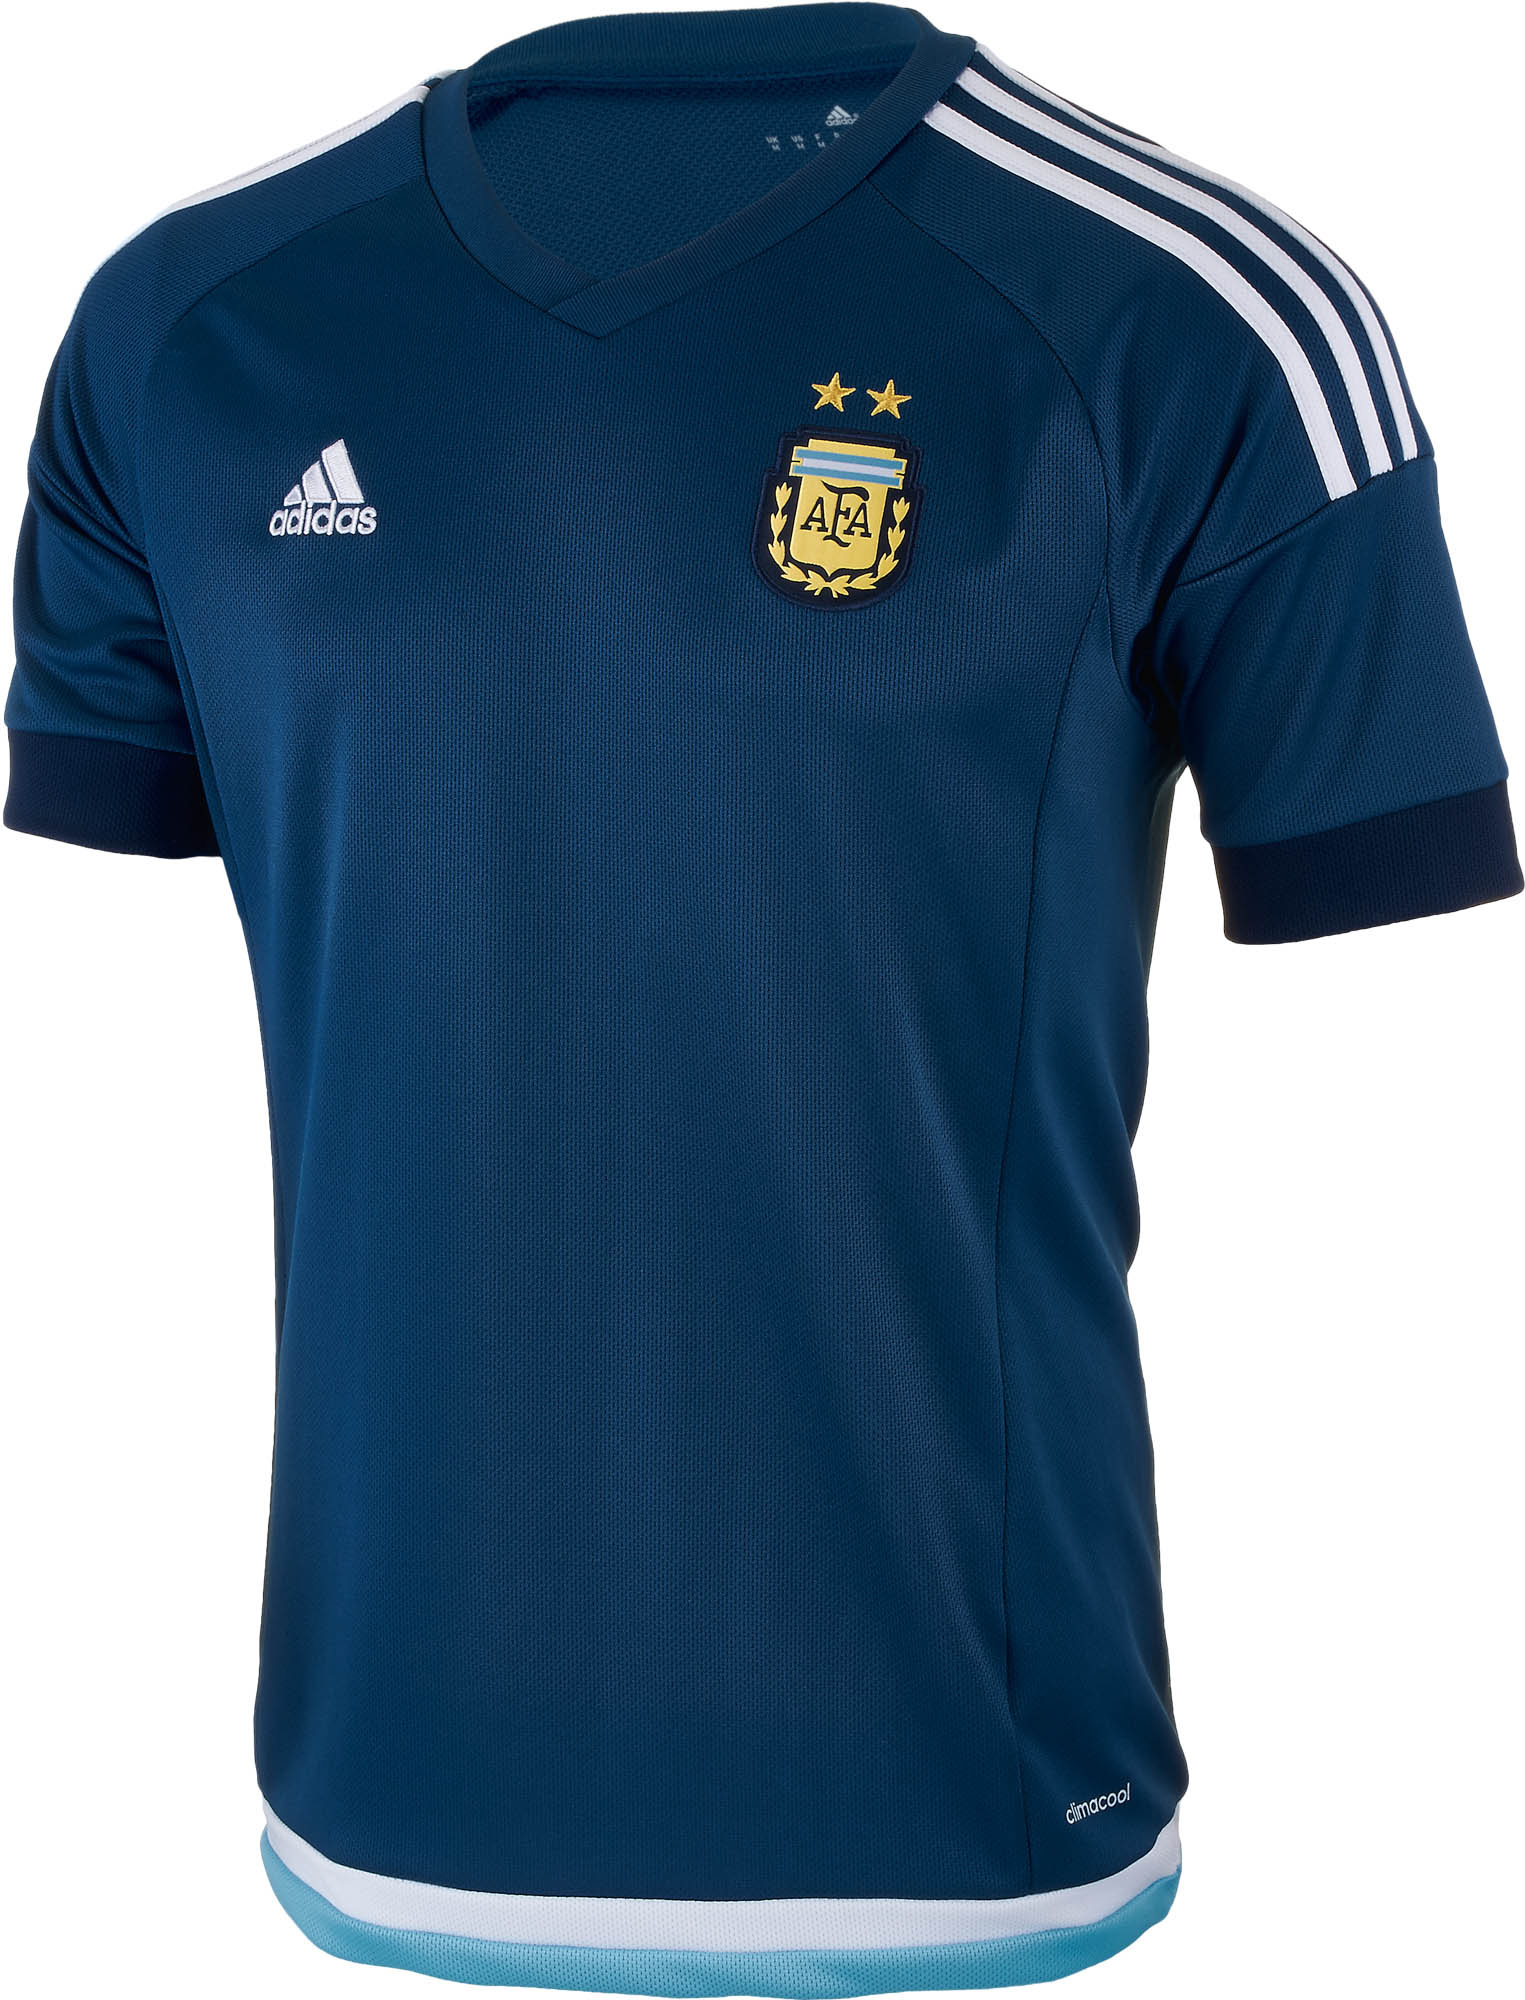 argentina away shirt 2018